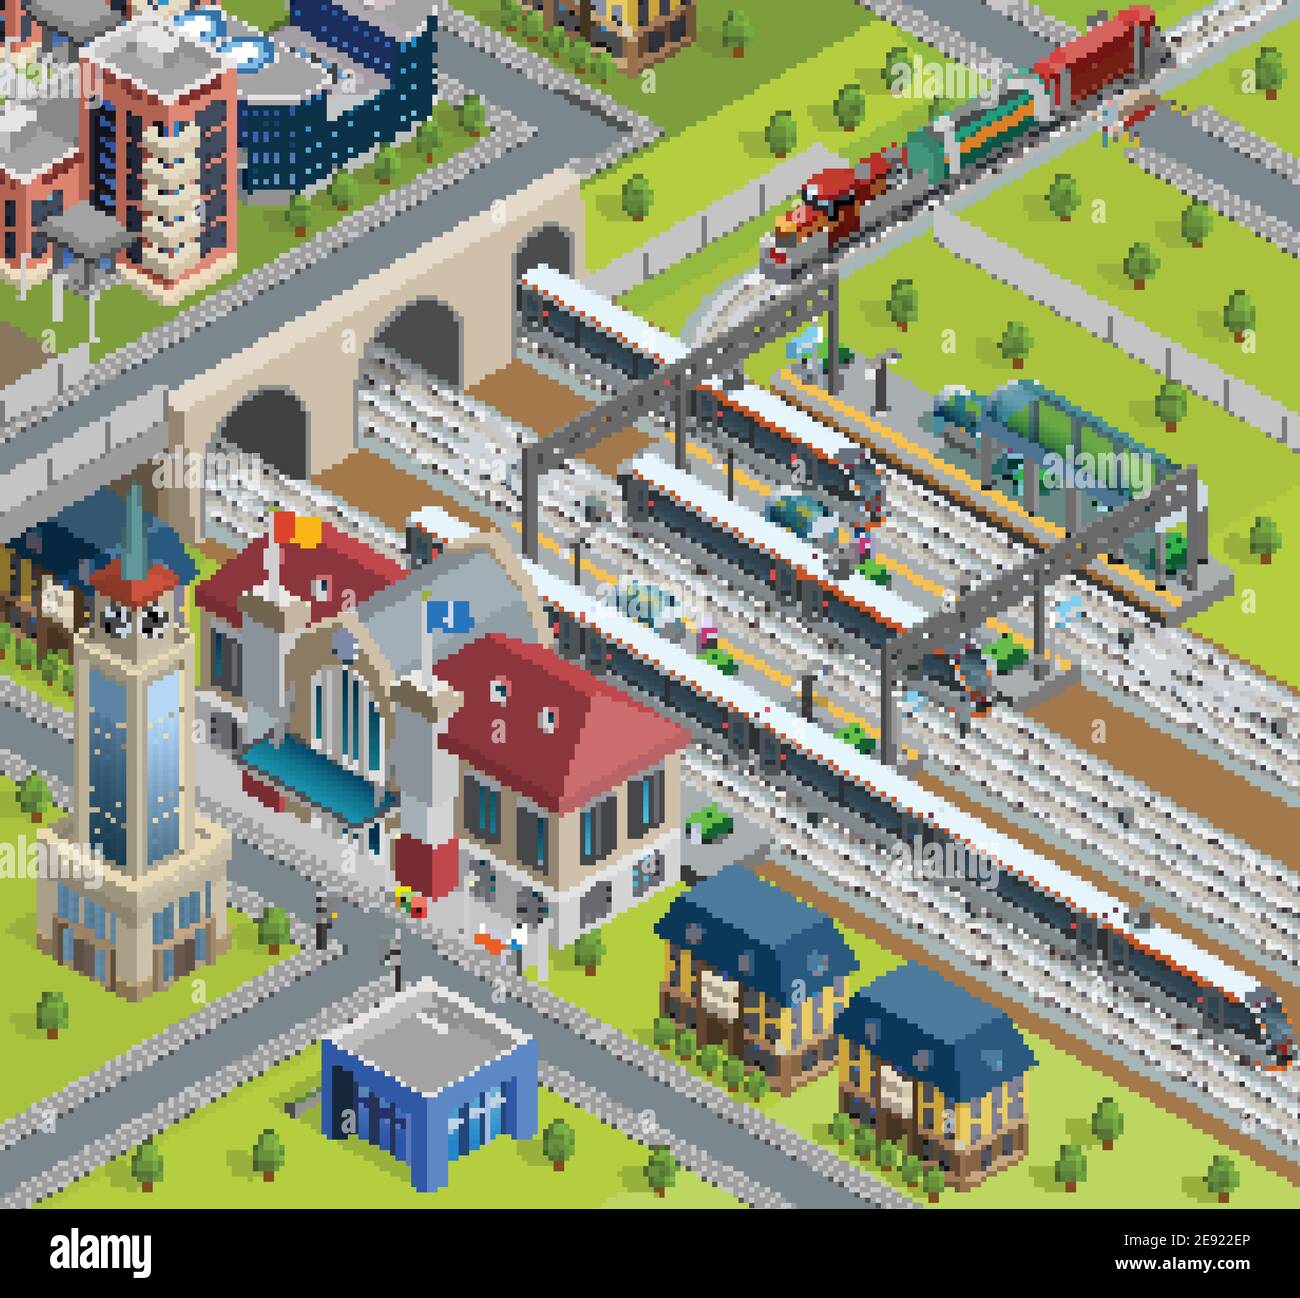 Affiche isométrique avec gare traditionnelle sur la plate-forme de la gare ferroviaire de la ville illustration vectorielle du bâtiment et des trains de voyageurs modernes Illustration de Vecteur